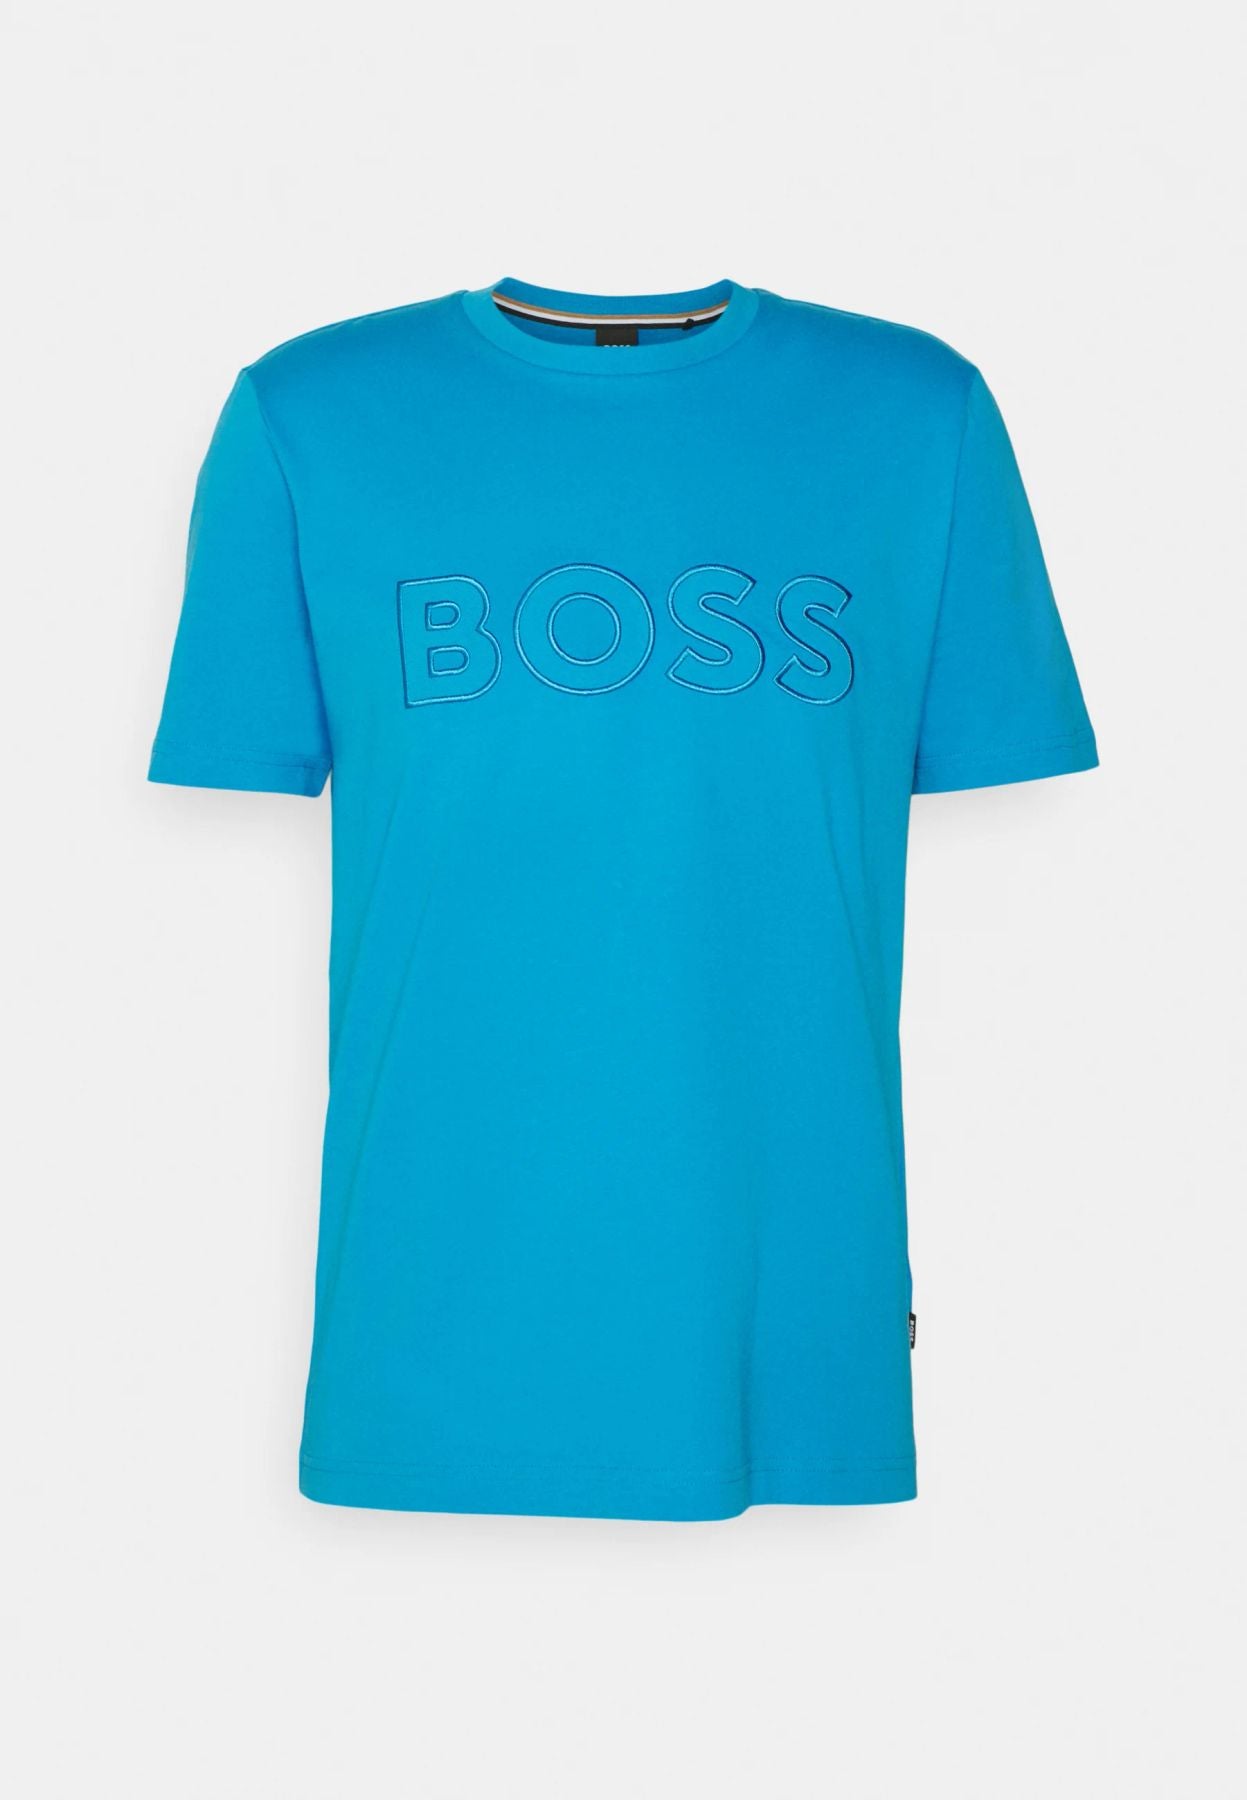 BOSS T-Shirt Tiburt 345 10236129 01